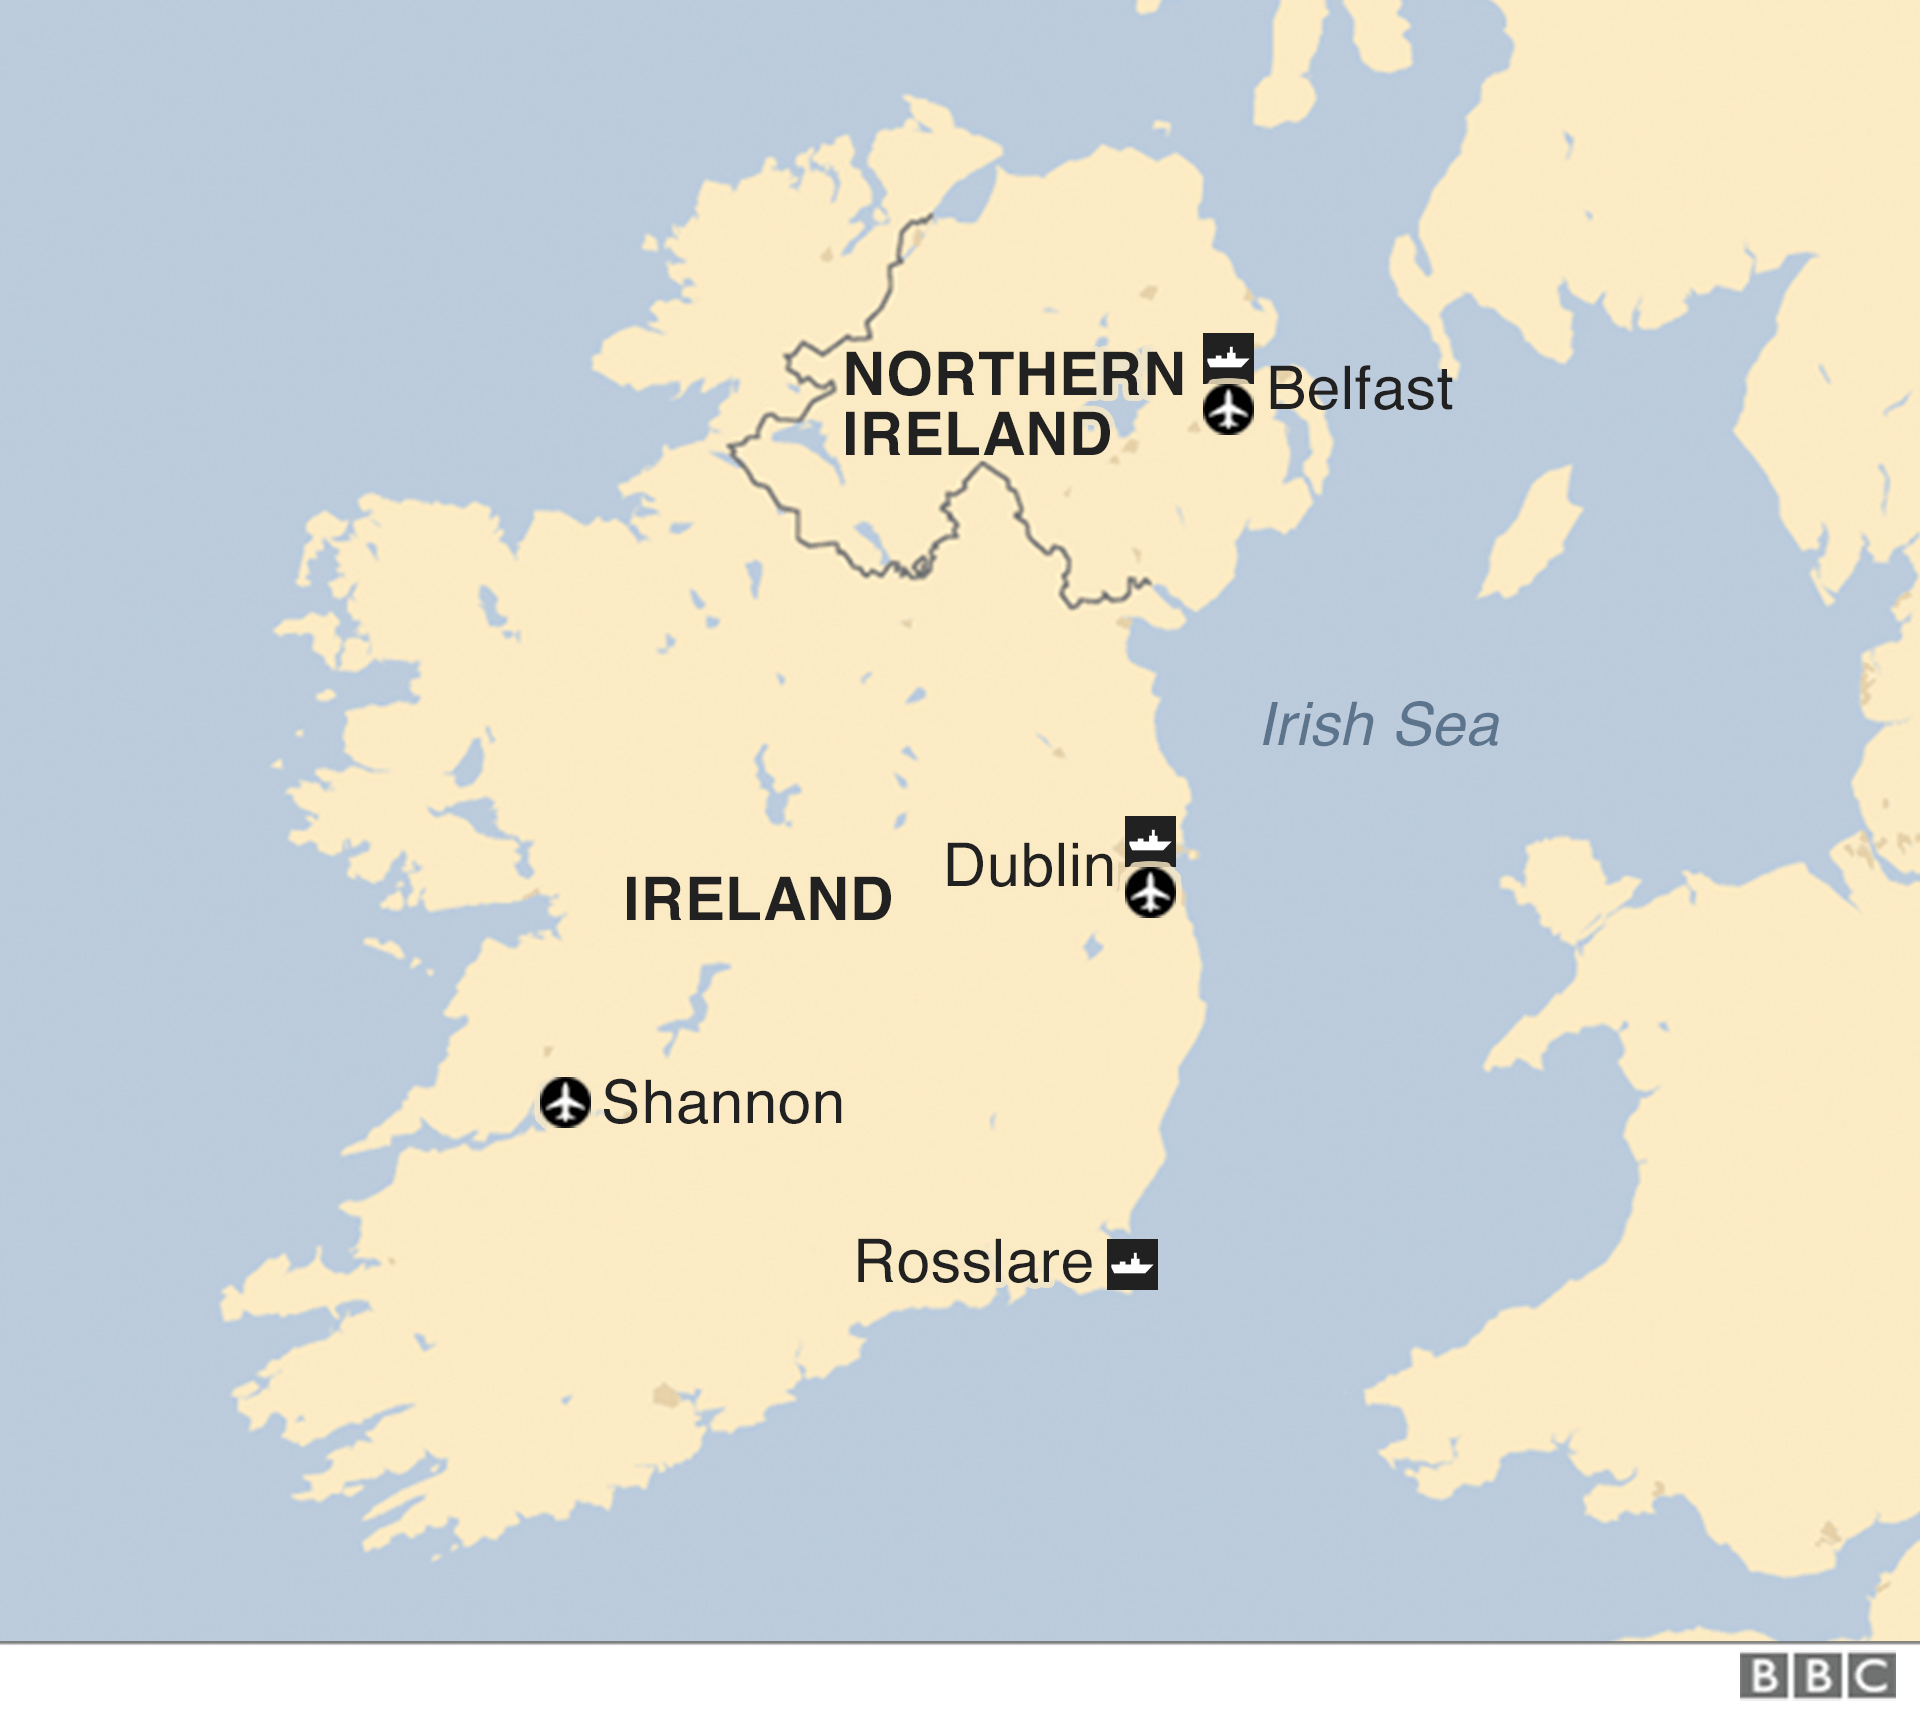 Карта Северной Ирландии и Ирландии